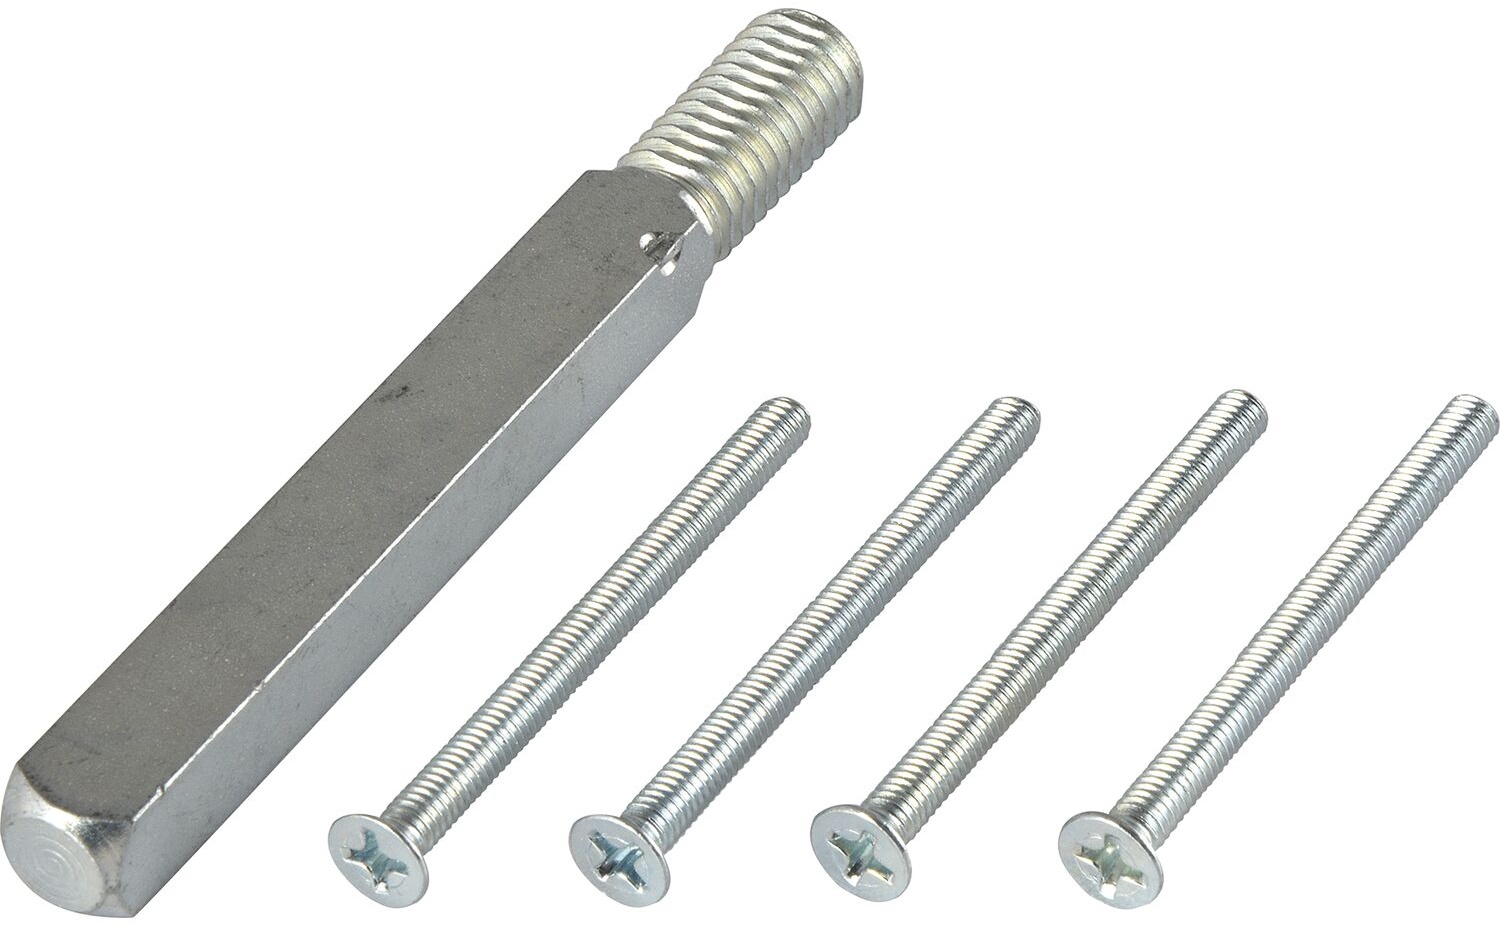 GRUNDMANN GEOS Stift- und Schraubenset feuerhemmend für Variante D6K - VK-Stift: 9 mm/ TS: 67-72mm / für FH-Wechselgarnituren